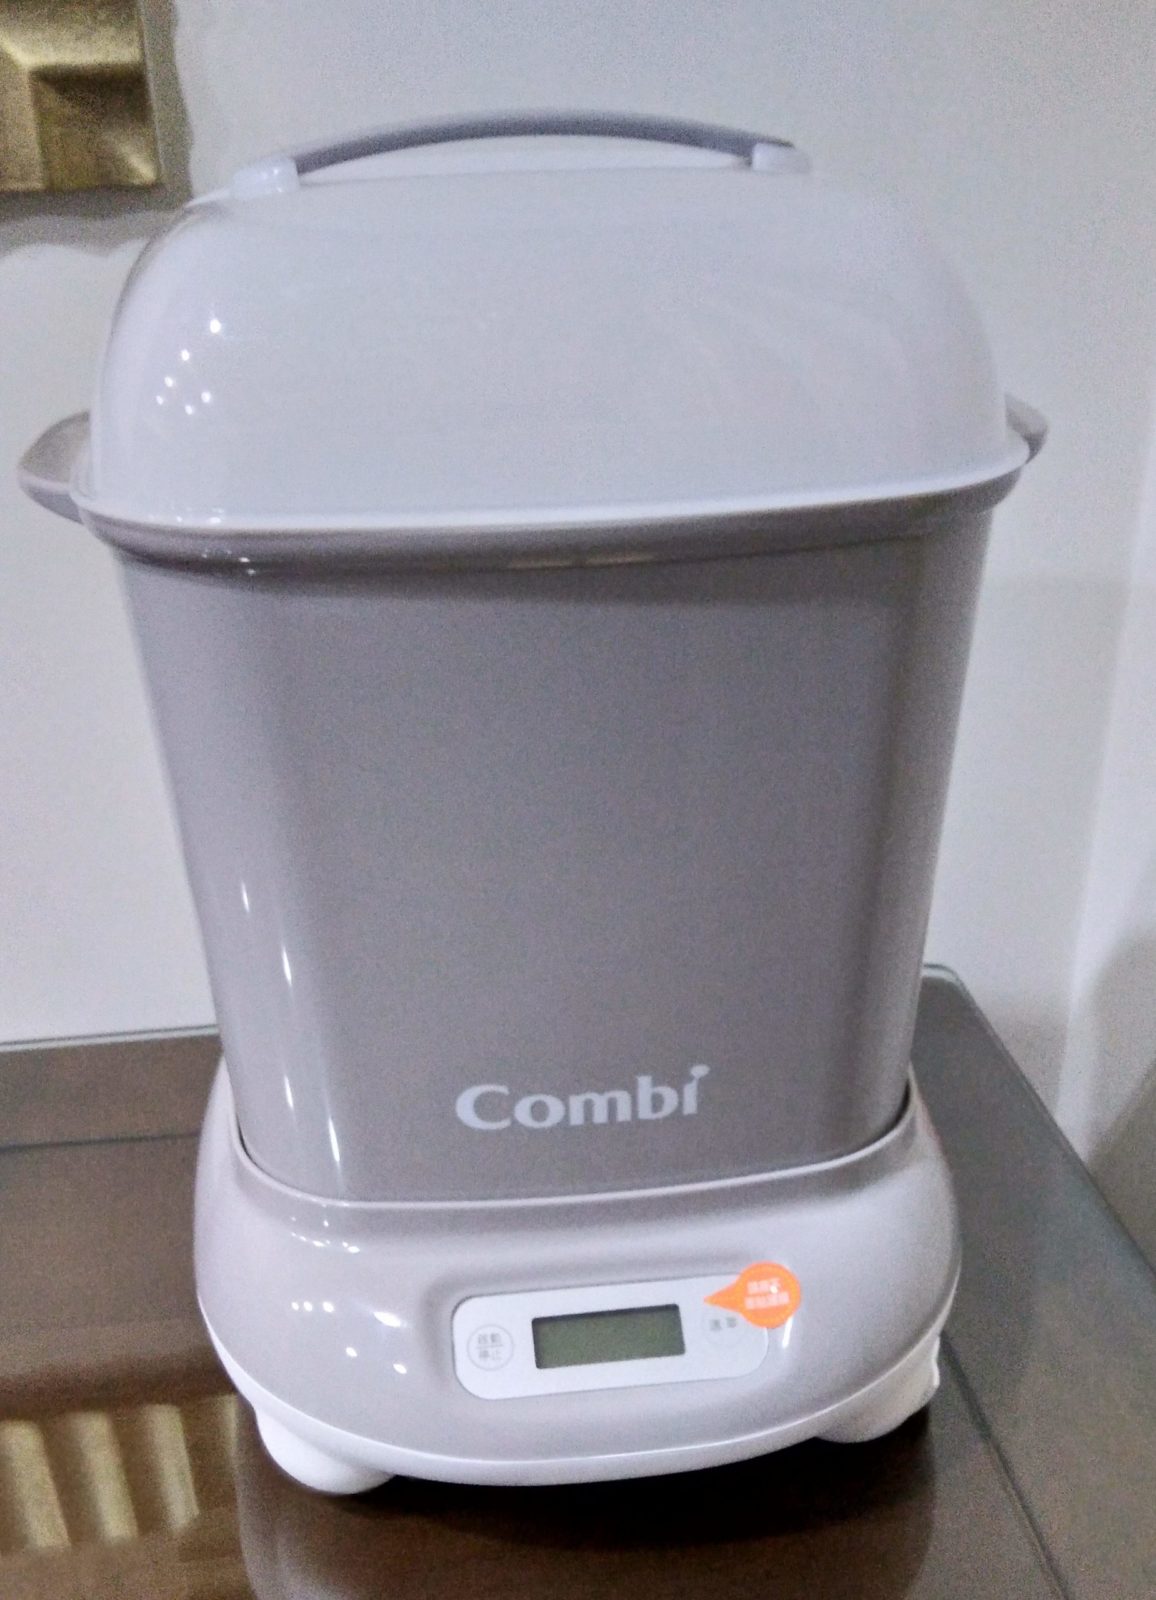 [ 育兒 ] – Combi 消毒鍋 幫你省時又省力